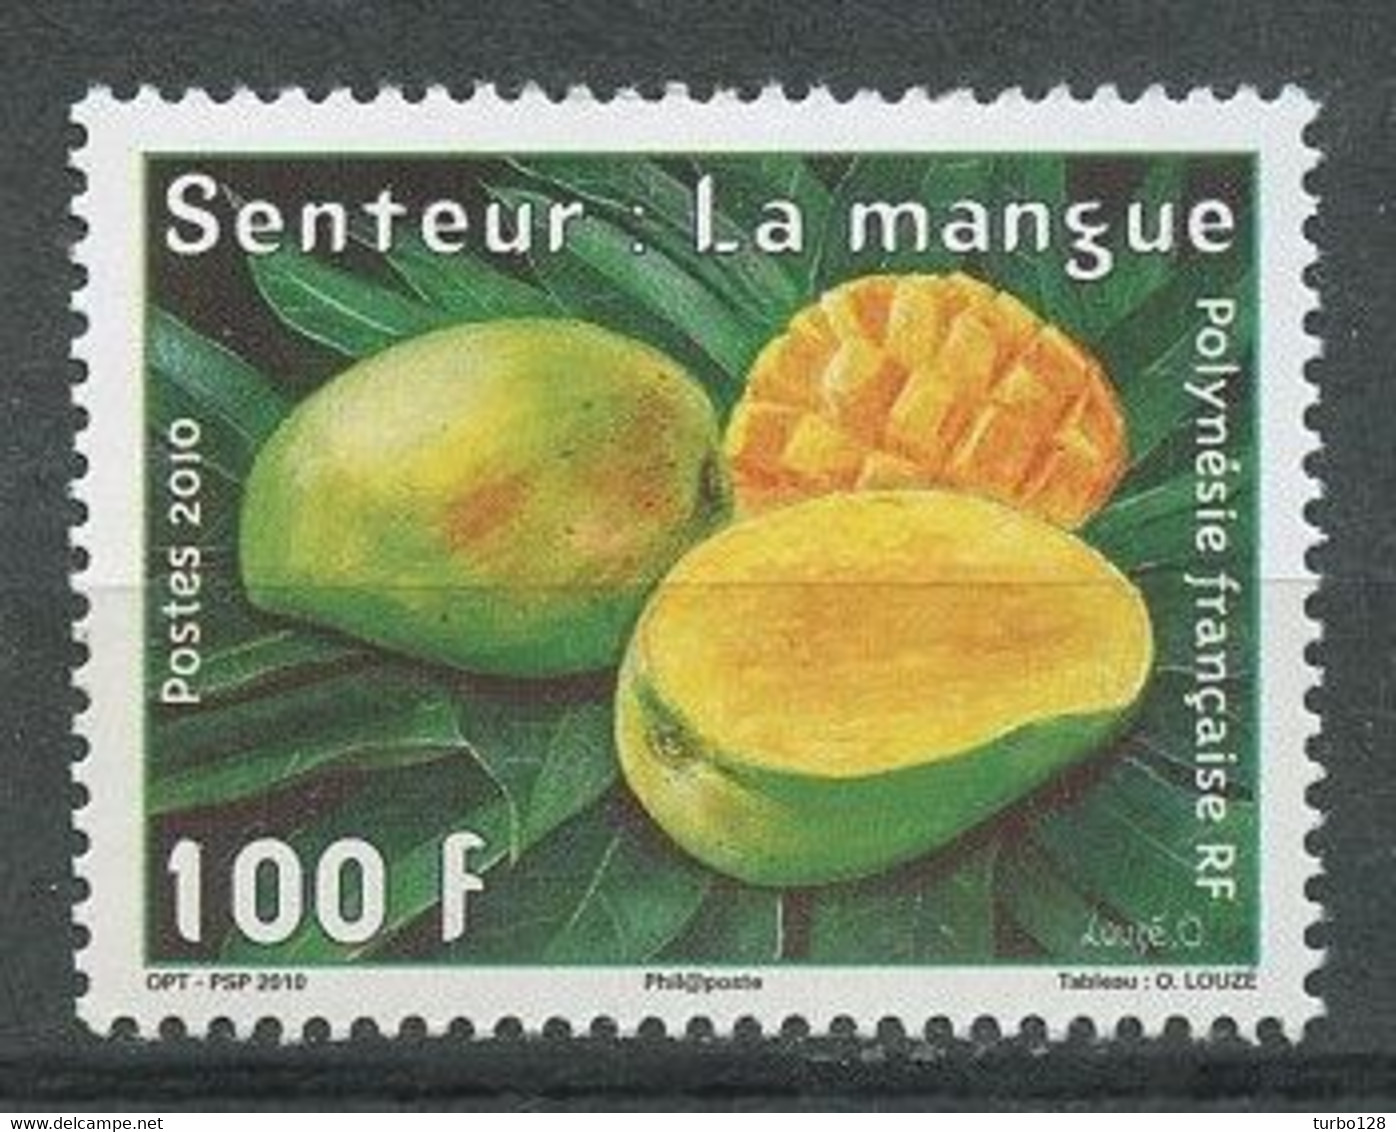 POLYNESIE 2010 N° 912 ** Neuf MNH  Superbe Senteur La Mangue Peinture Tableaux D'O Louzé Timbre Parfumé Fruits - Neufs